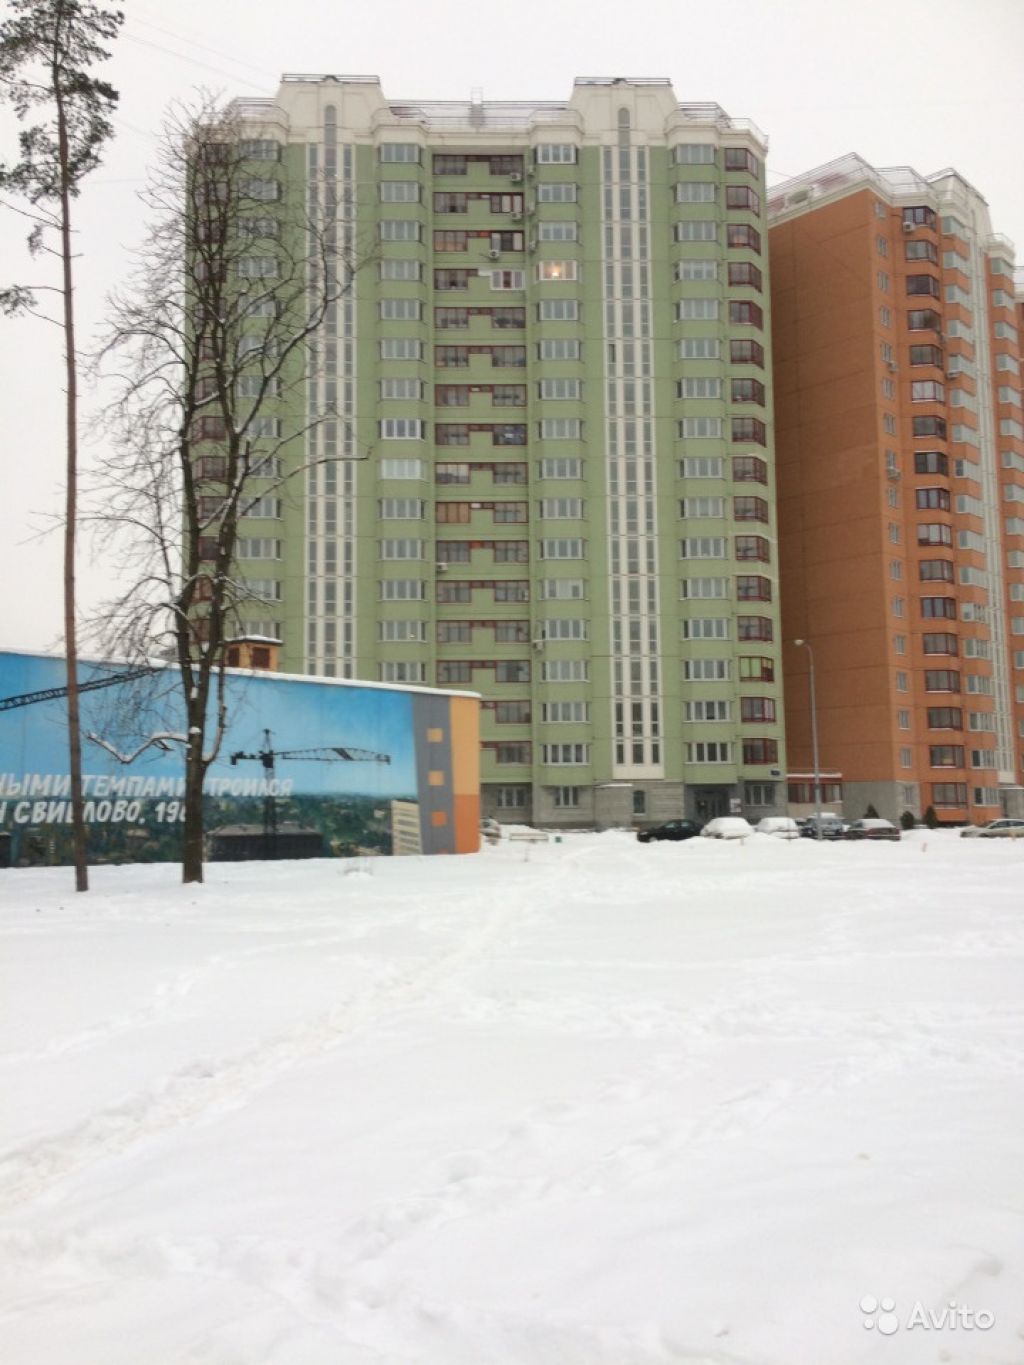 Продам квартиру 1-к квартира 38 м² на 4 этаже 17-этажного панельного дома в Москве. Фото 1